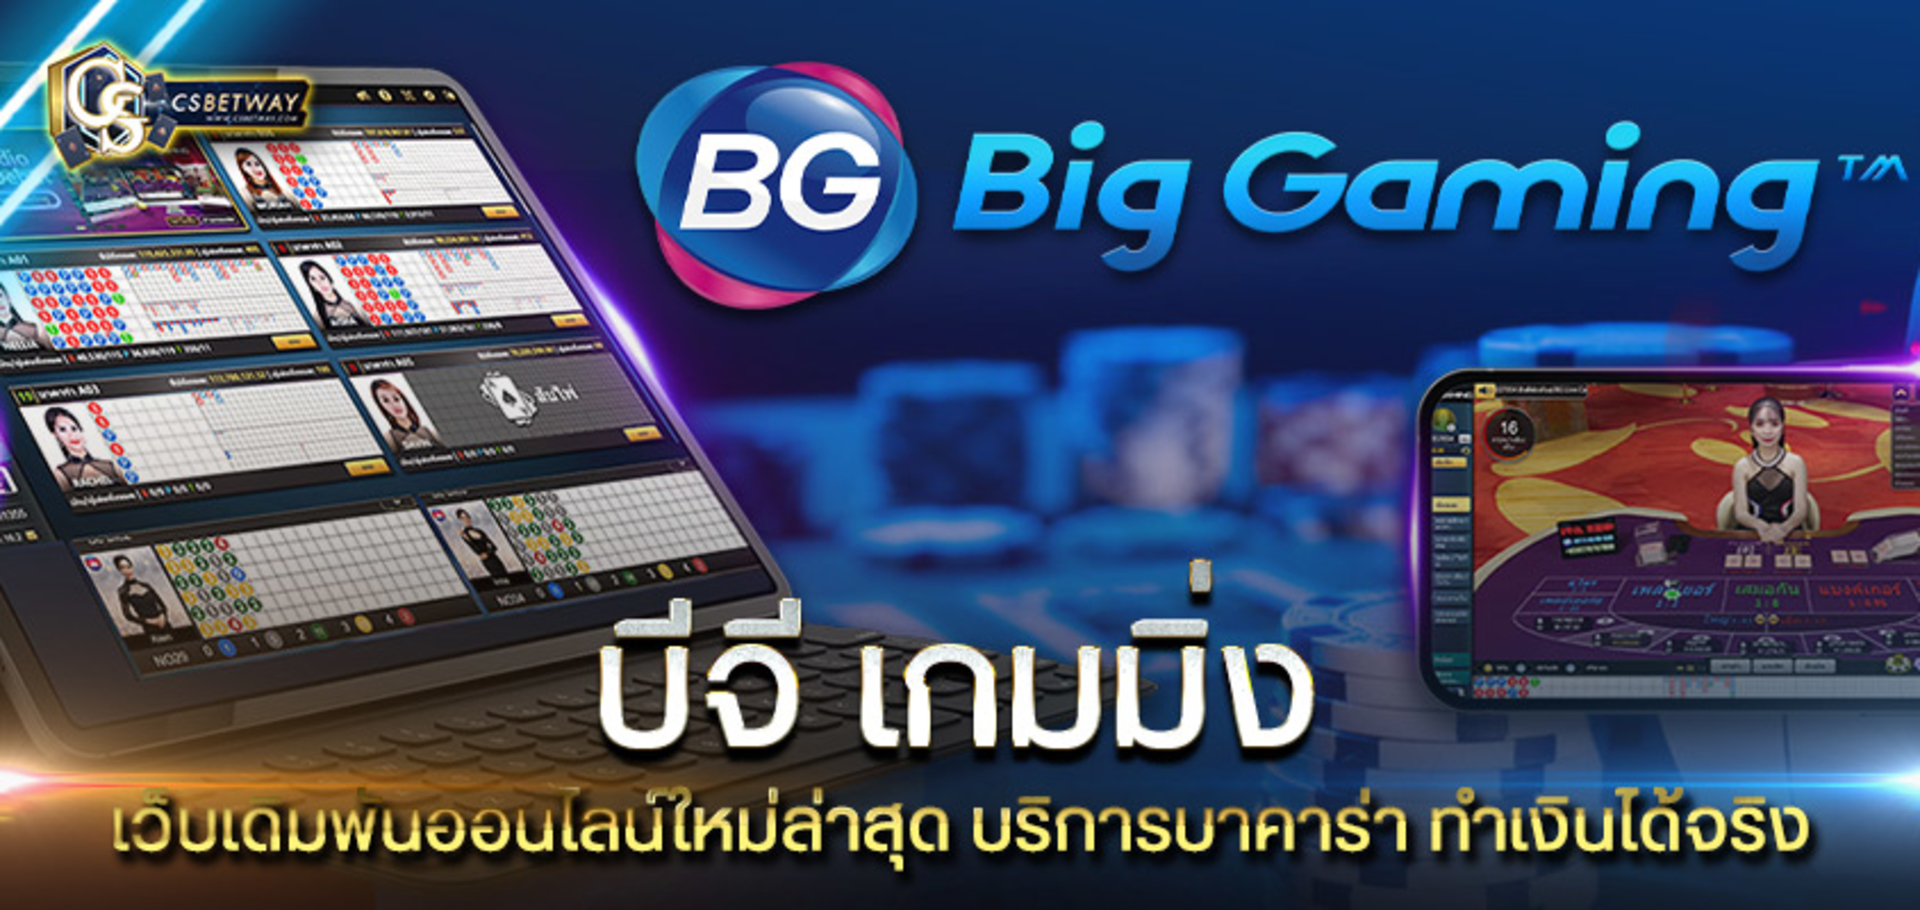 BG Gaming เว็บเดิมพันออนไลน์ใหม่ล่าสุด บริการบาคาร่าออนไลน์ ทำเงินได้จริง ฟรีเครดิต